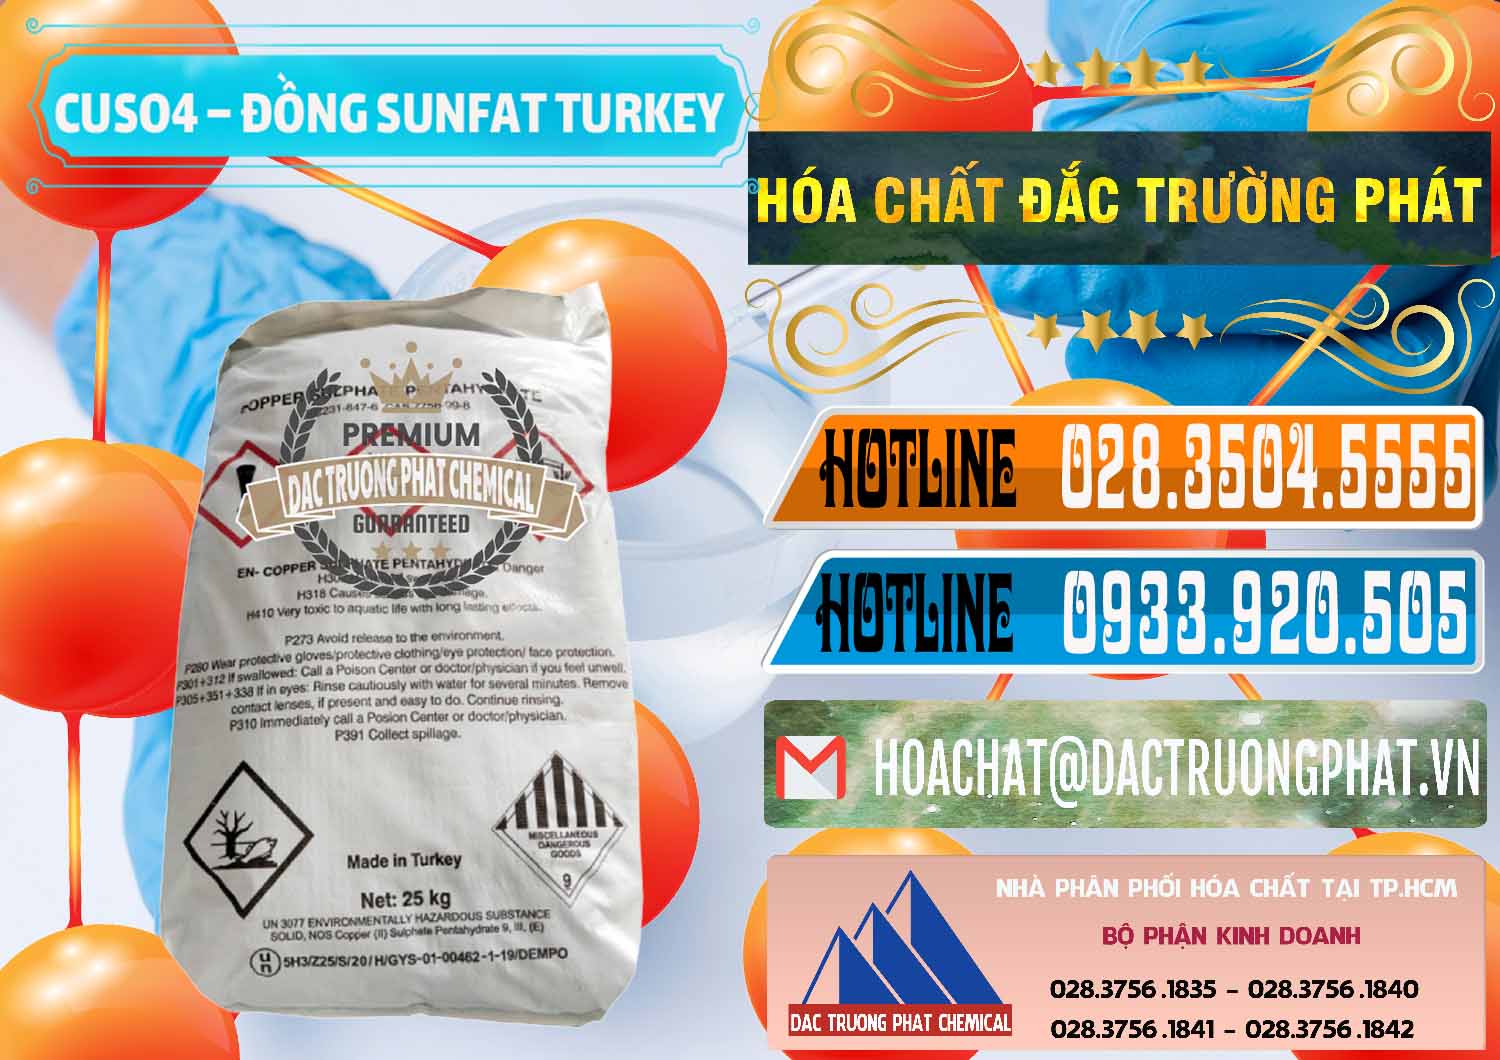 Cty chuyên bán và phân phối CuSO4 – Đồng Sunfat Thổ Nhĩ Kỳ Turkey - 0481 - Nhà nhập khẩu _ cung cấp hóa chất tại TP.HCM - stmp.net